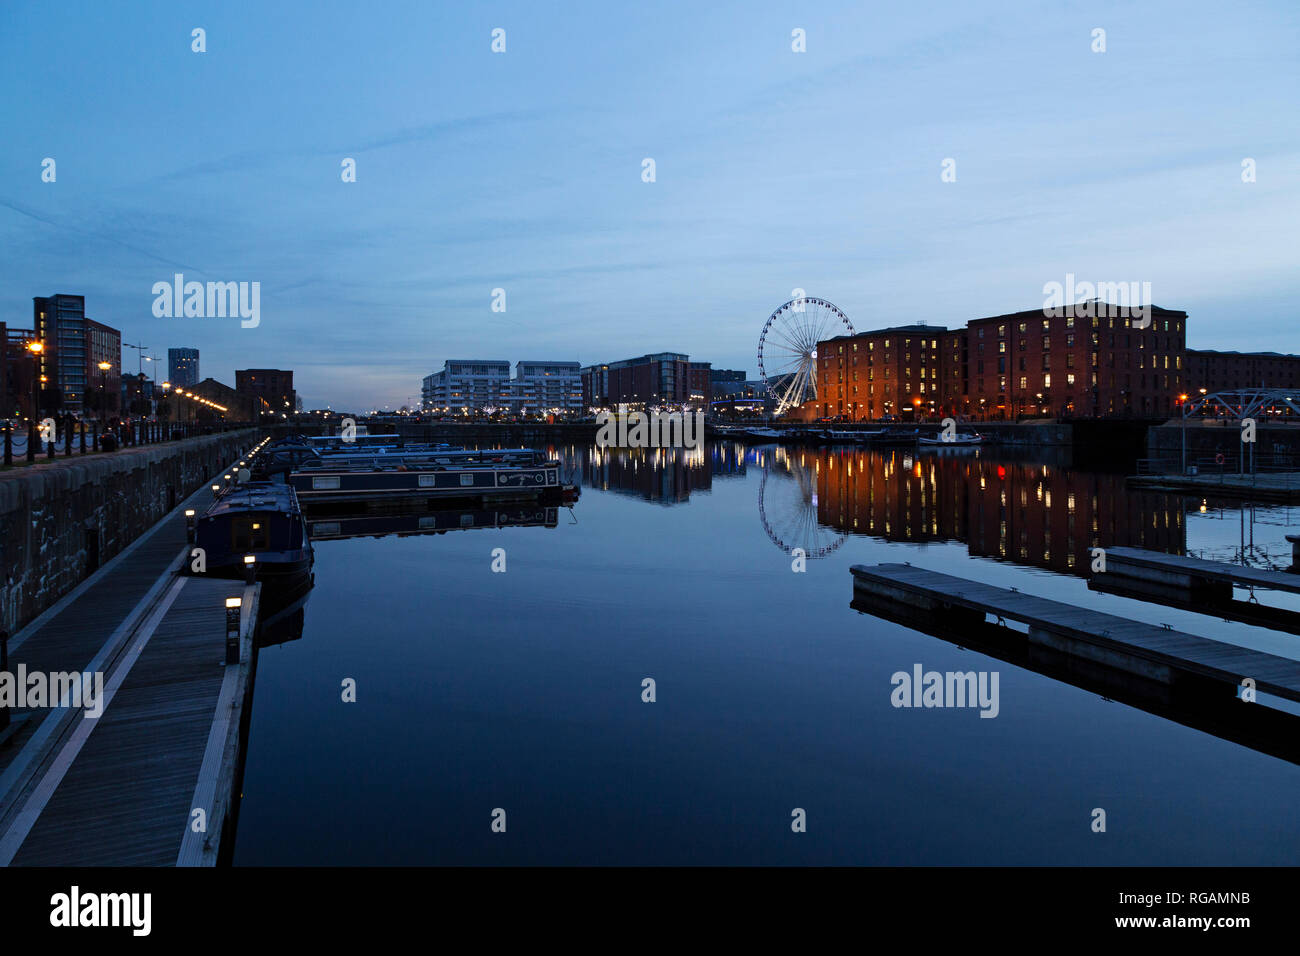 Le Pavillon Atlantique et bâtiments de la Royal Albert Dock de refléter dans le Salthouse Dock de Liverpool, en Angleterre. Banque D'Images